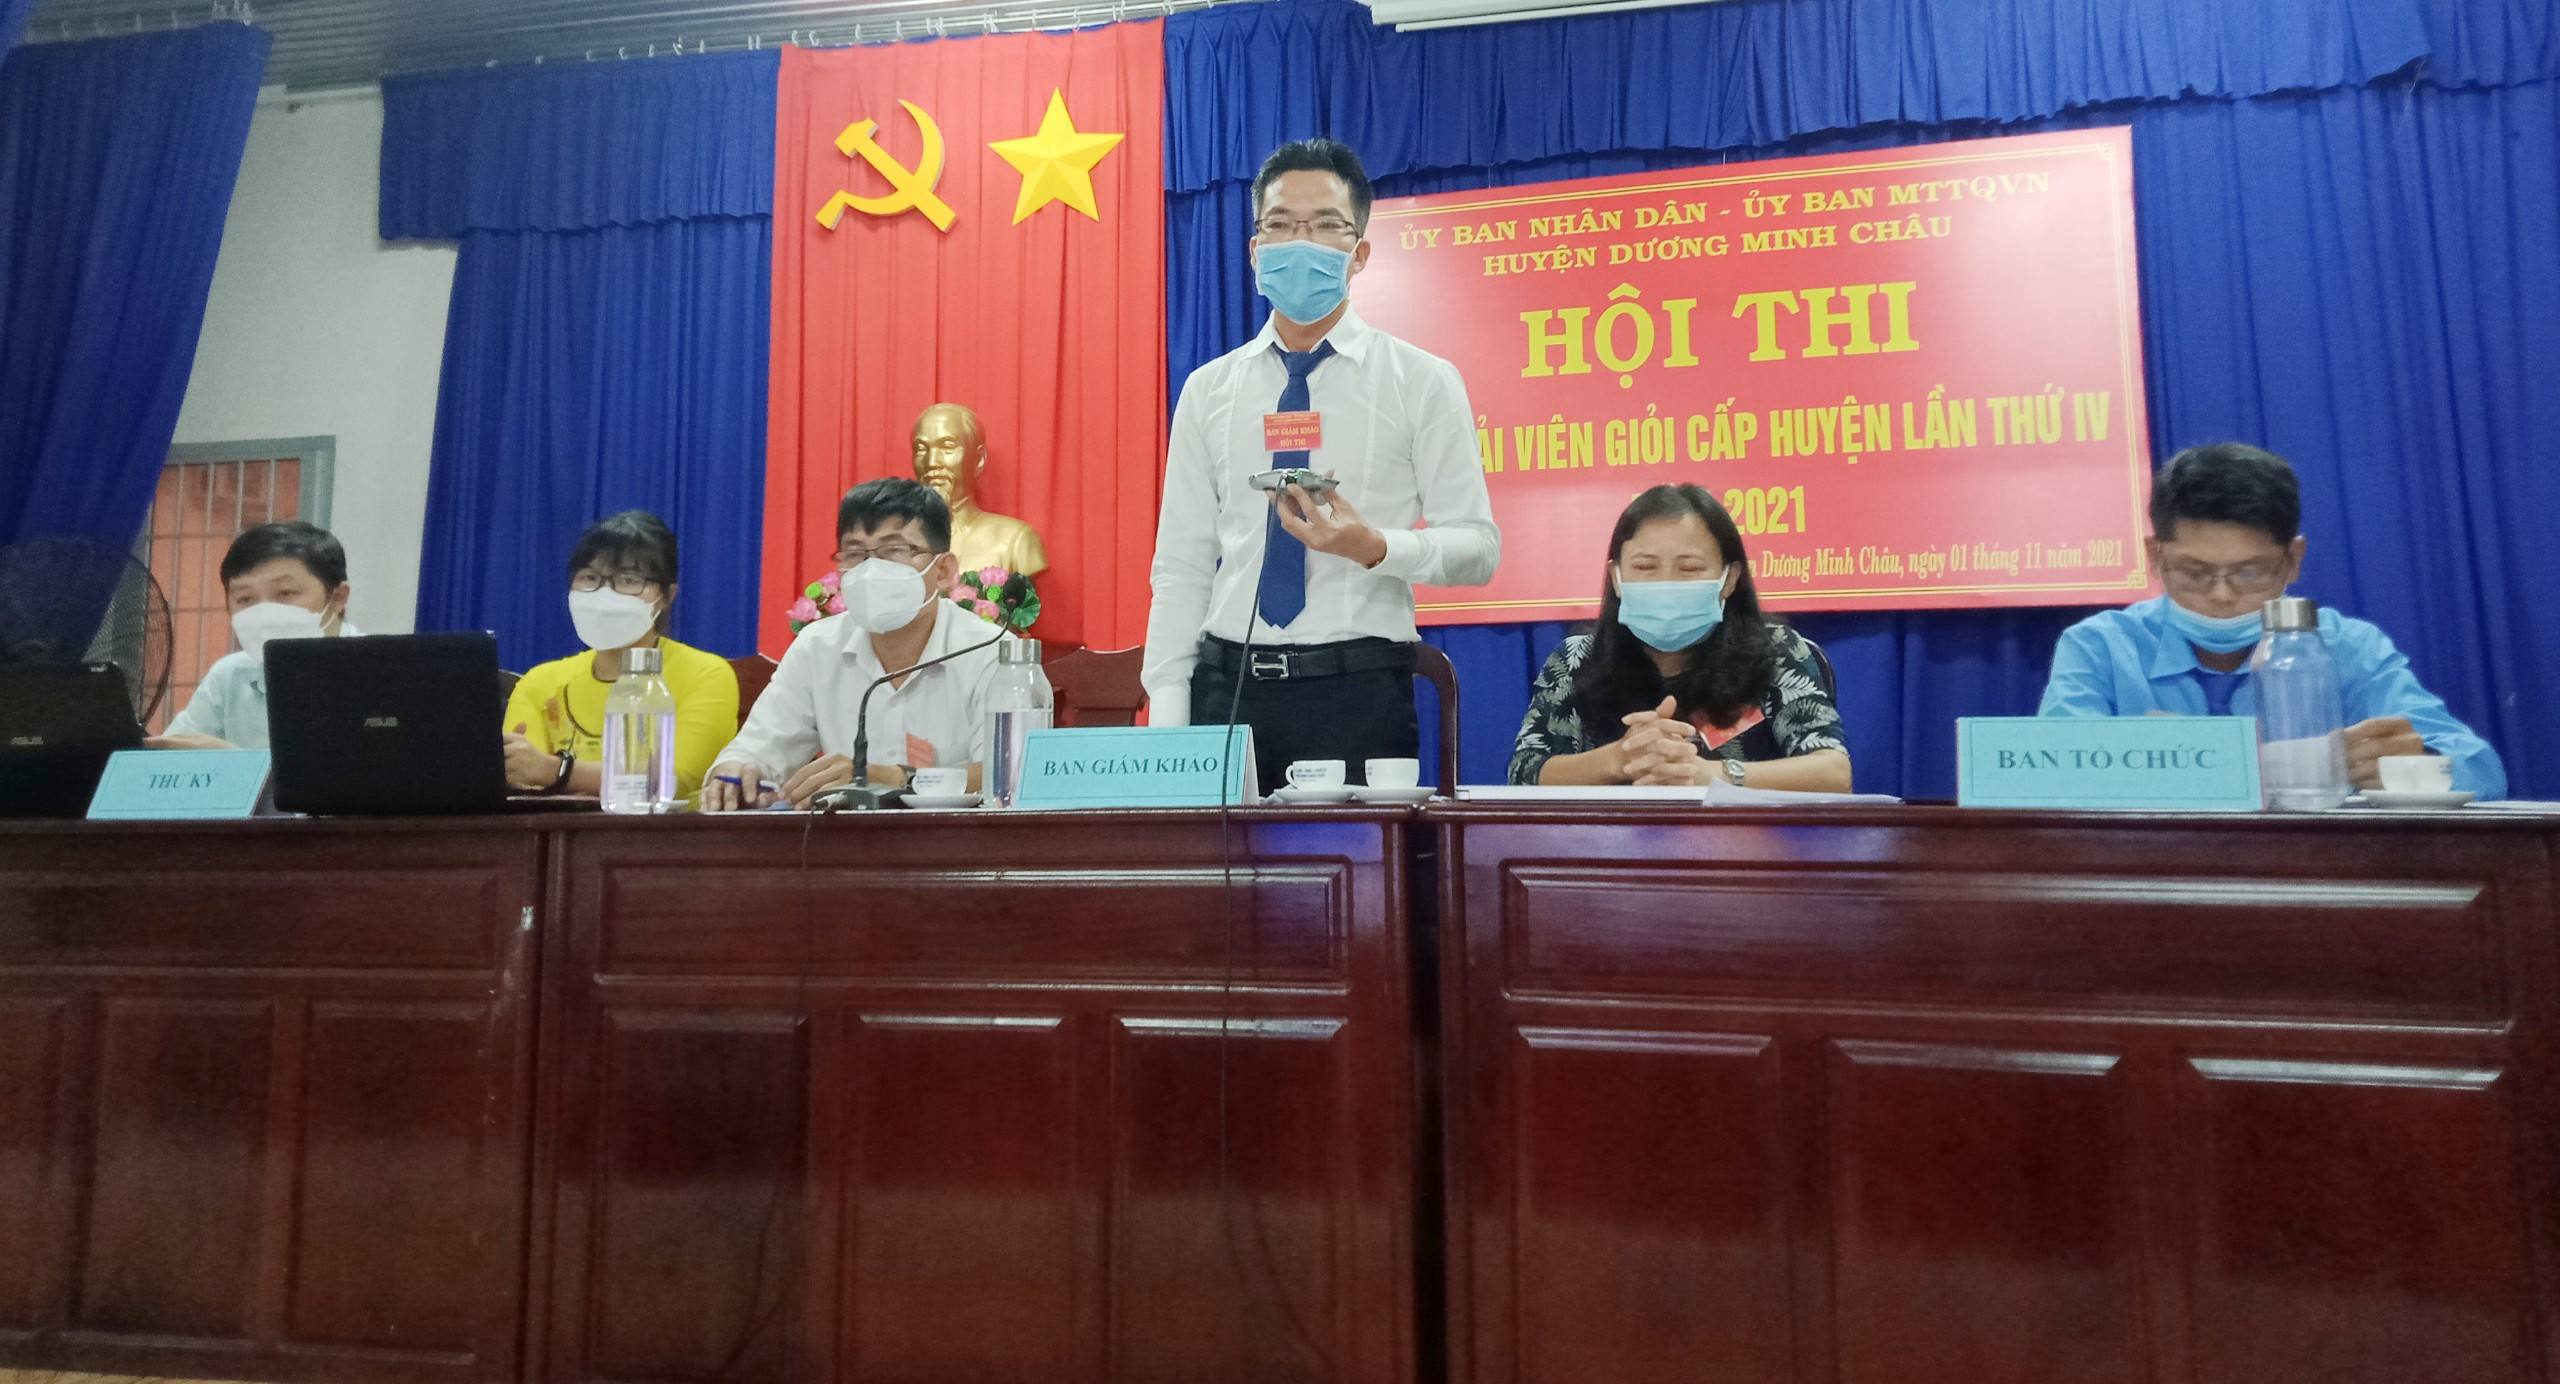 Huyện Dương Minh Châu: Tổ chức Hội thị “Hòa giải viên giỏi” cấp huyện lần thứ IV năm 2021